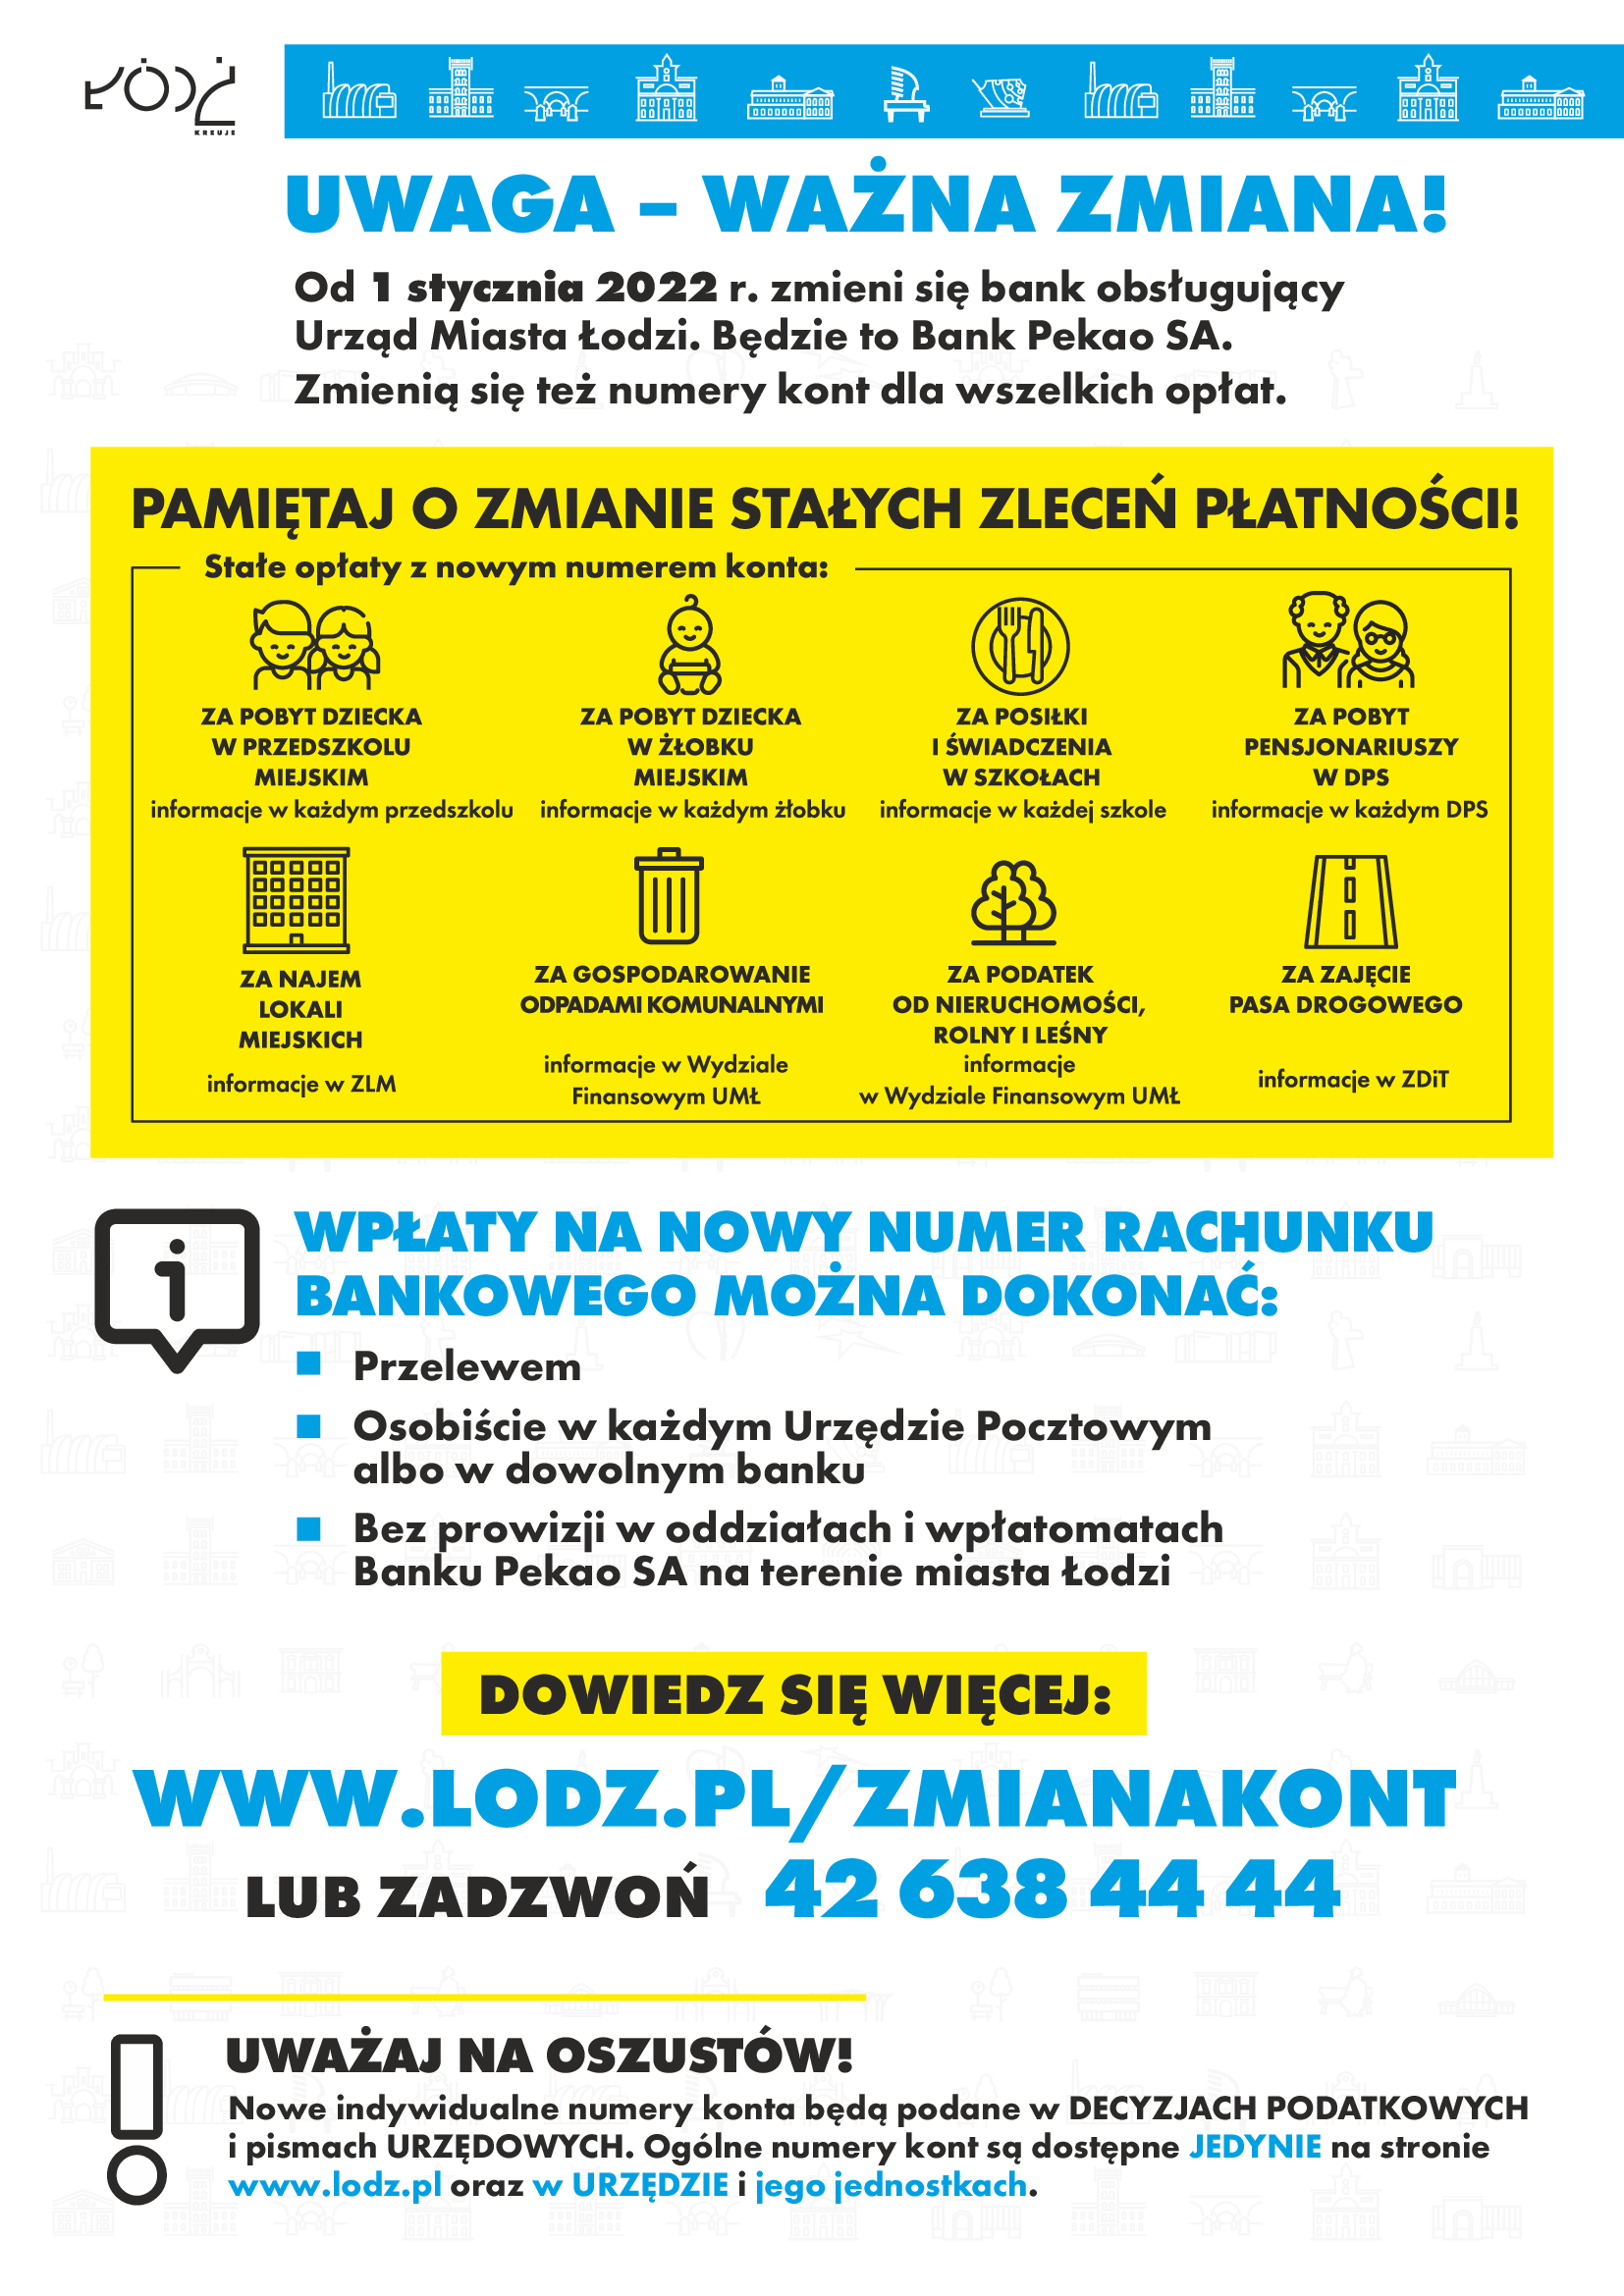 Informacja z Urzędu Miasta Łódź dotycząca zmiany konta oraz obsługi nowego banku